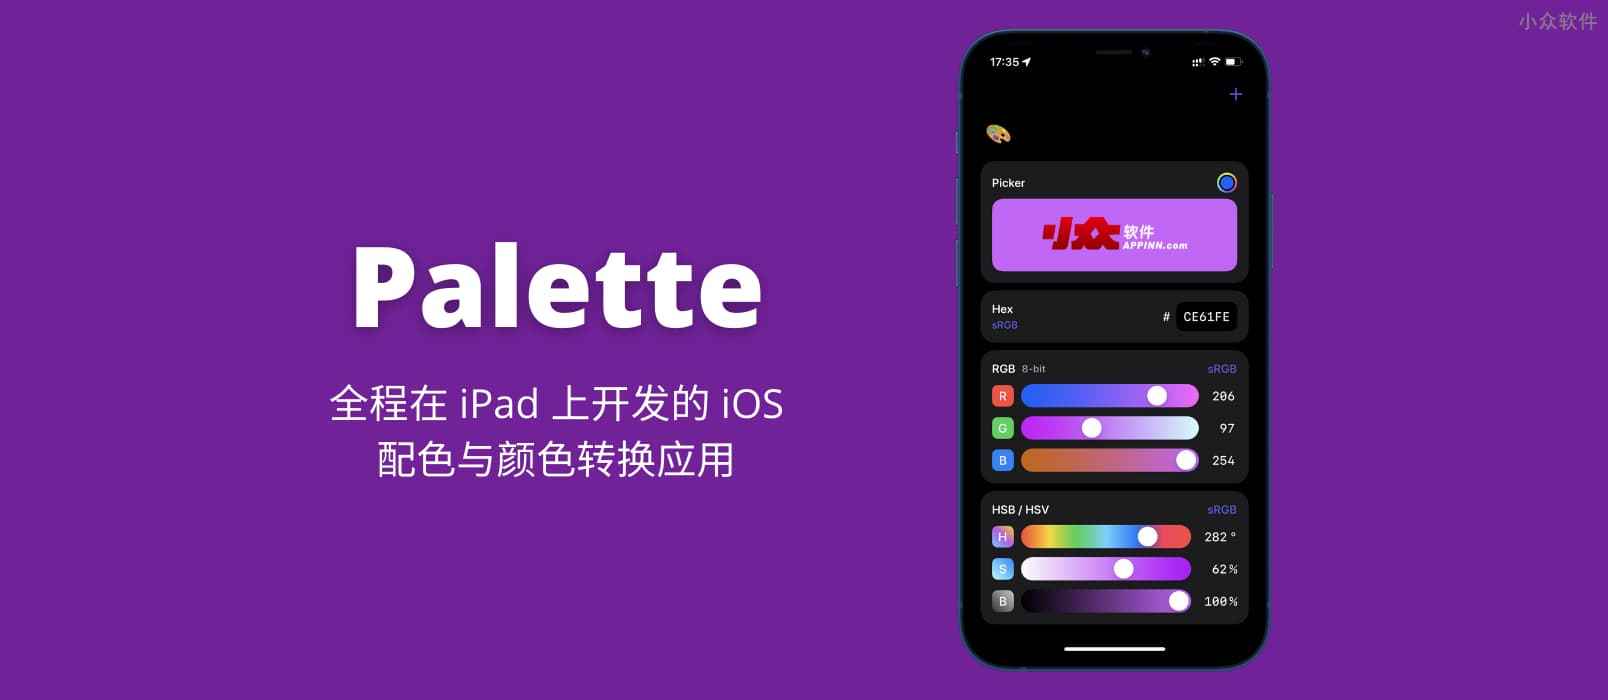 Palette – 全程在 iPad 上开发并上架 App Store 的 iOS 颜色转换应用